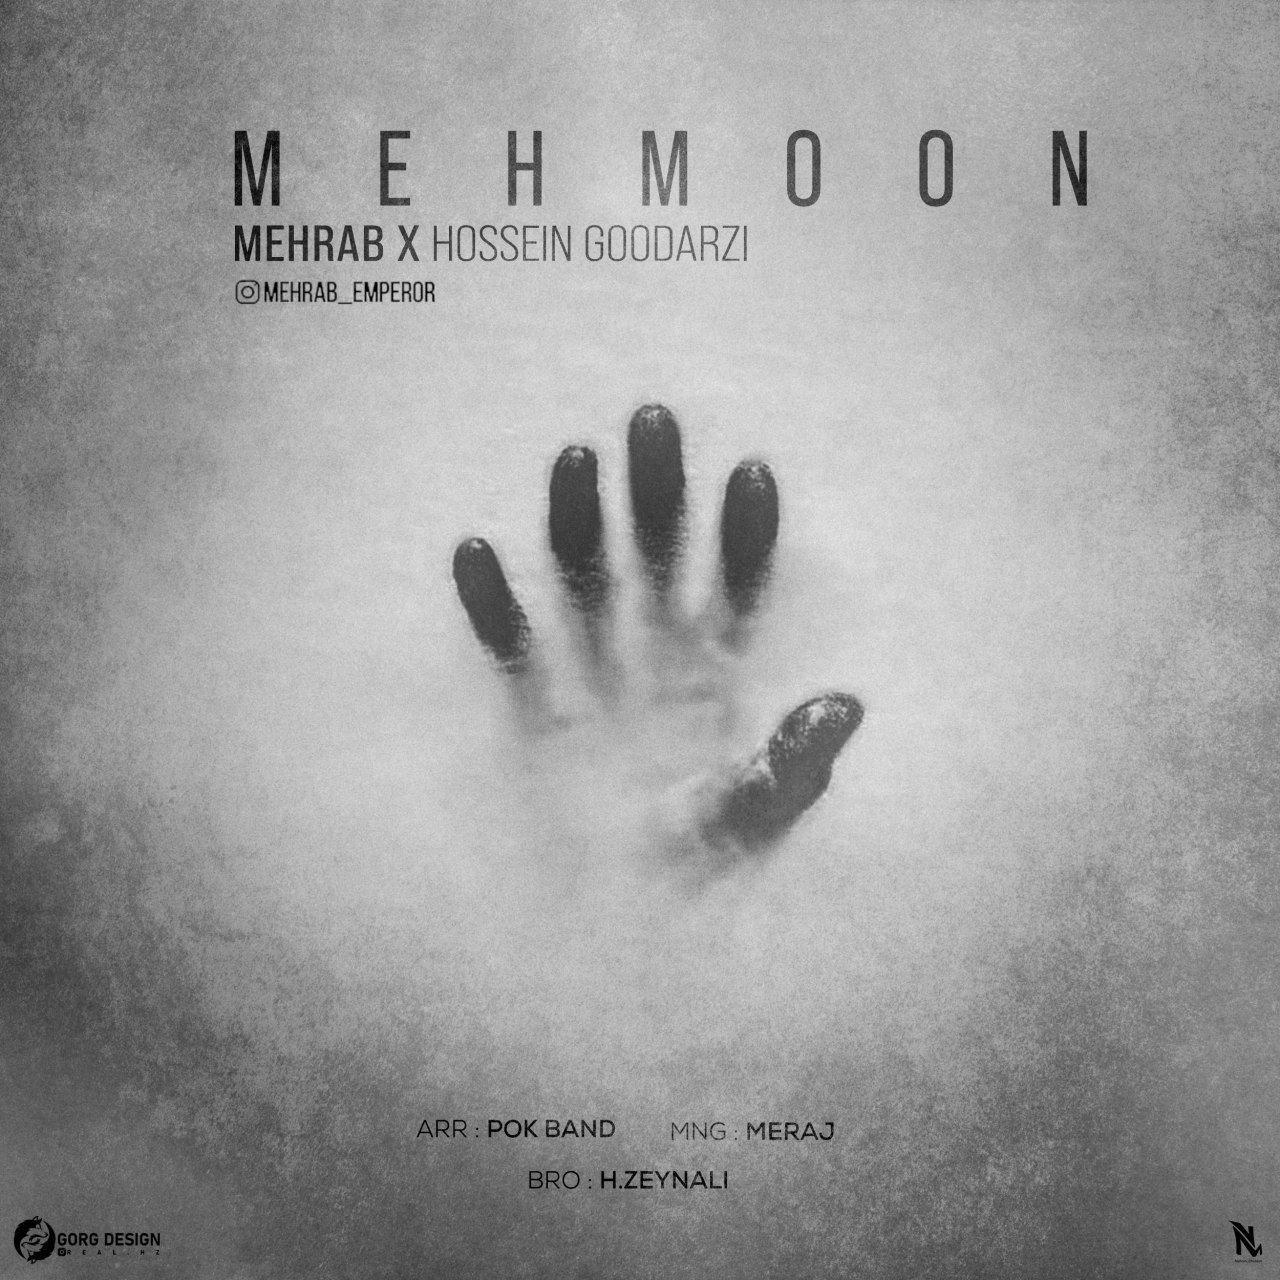  دانلود آهنگ جدید مهراب و حسین گودرزی - مهمون | Download New Music By Mehrab & Hossein Goodarzi - Mehmoon